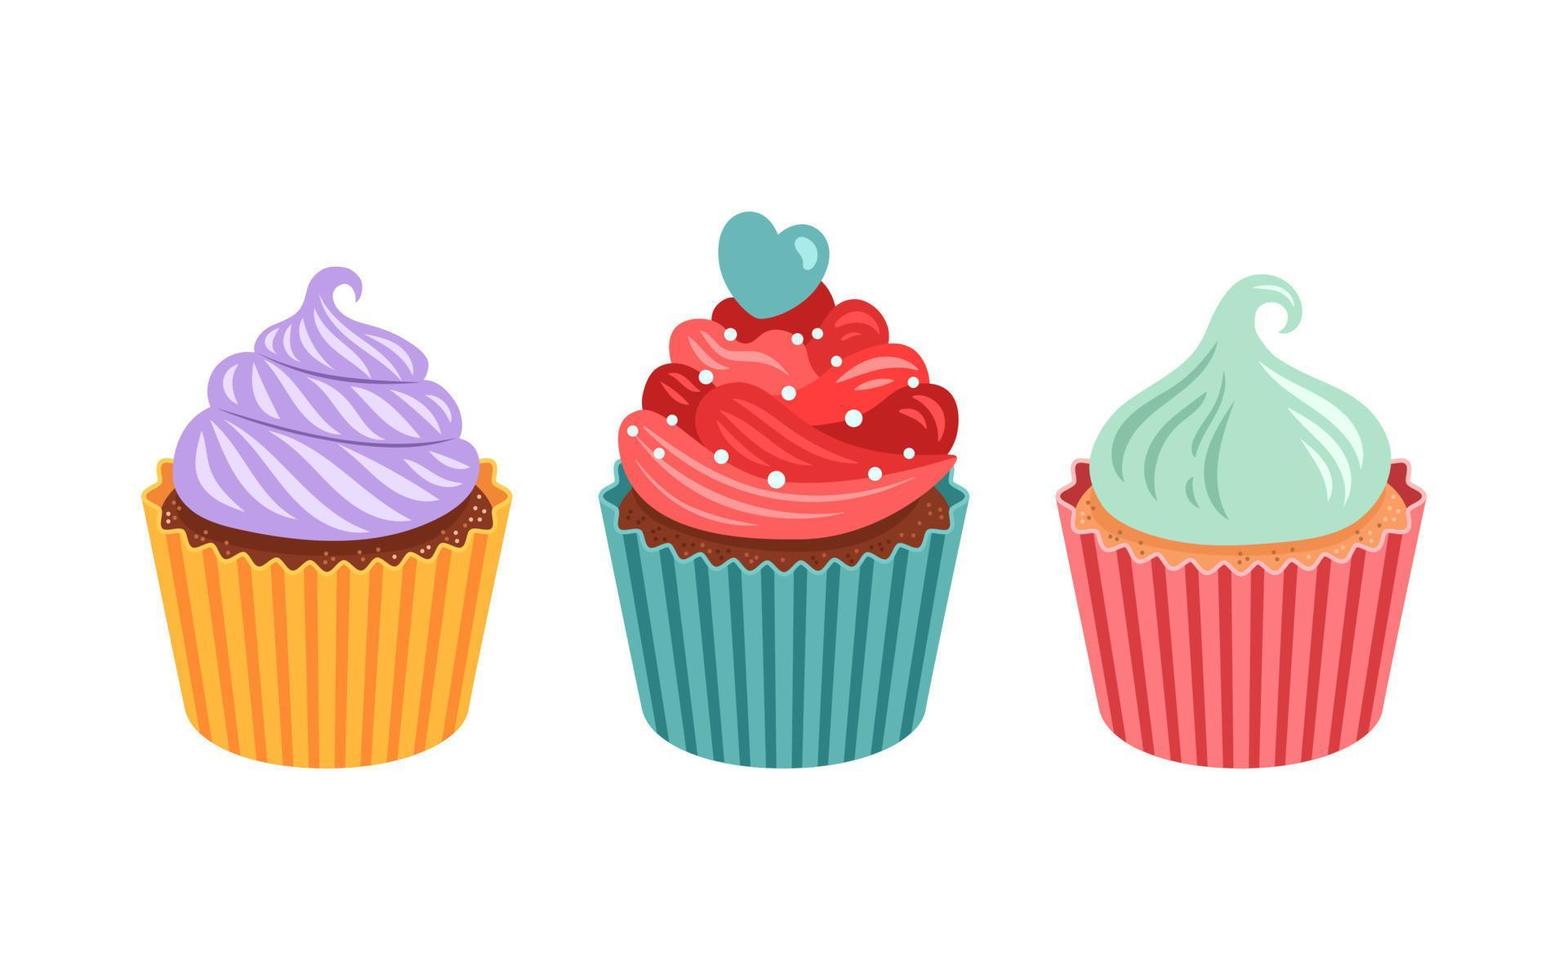 uppsättning av söta vektor cupcakes och muffins, olika färger och former